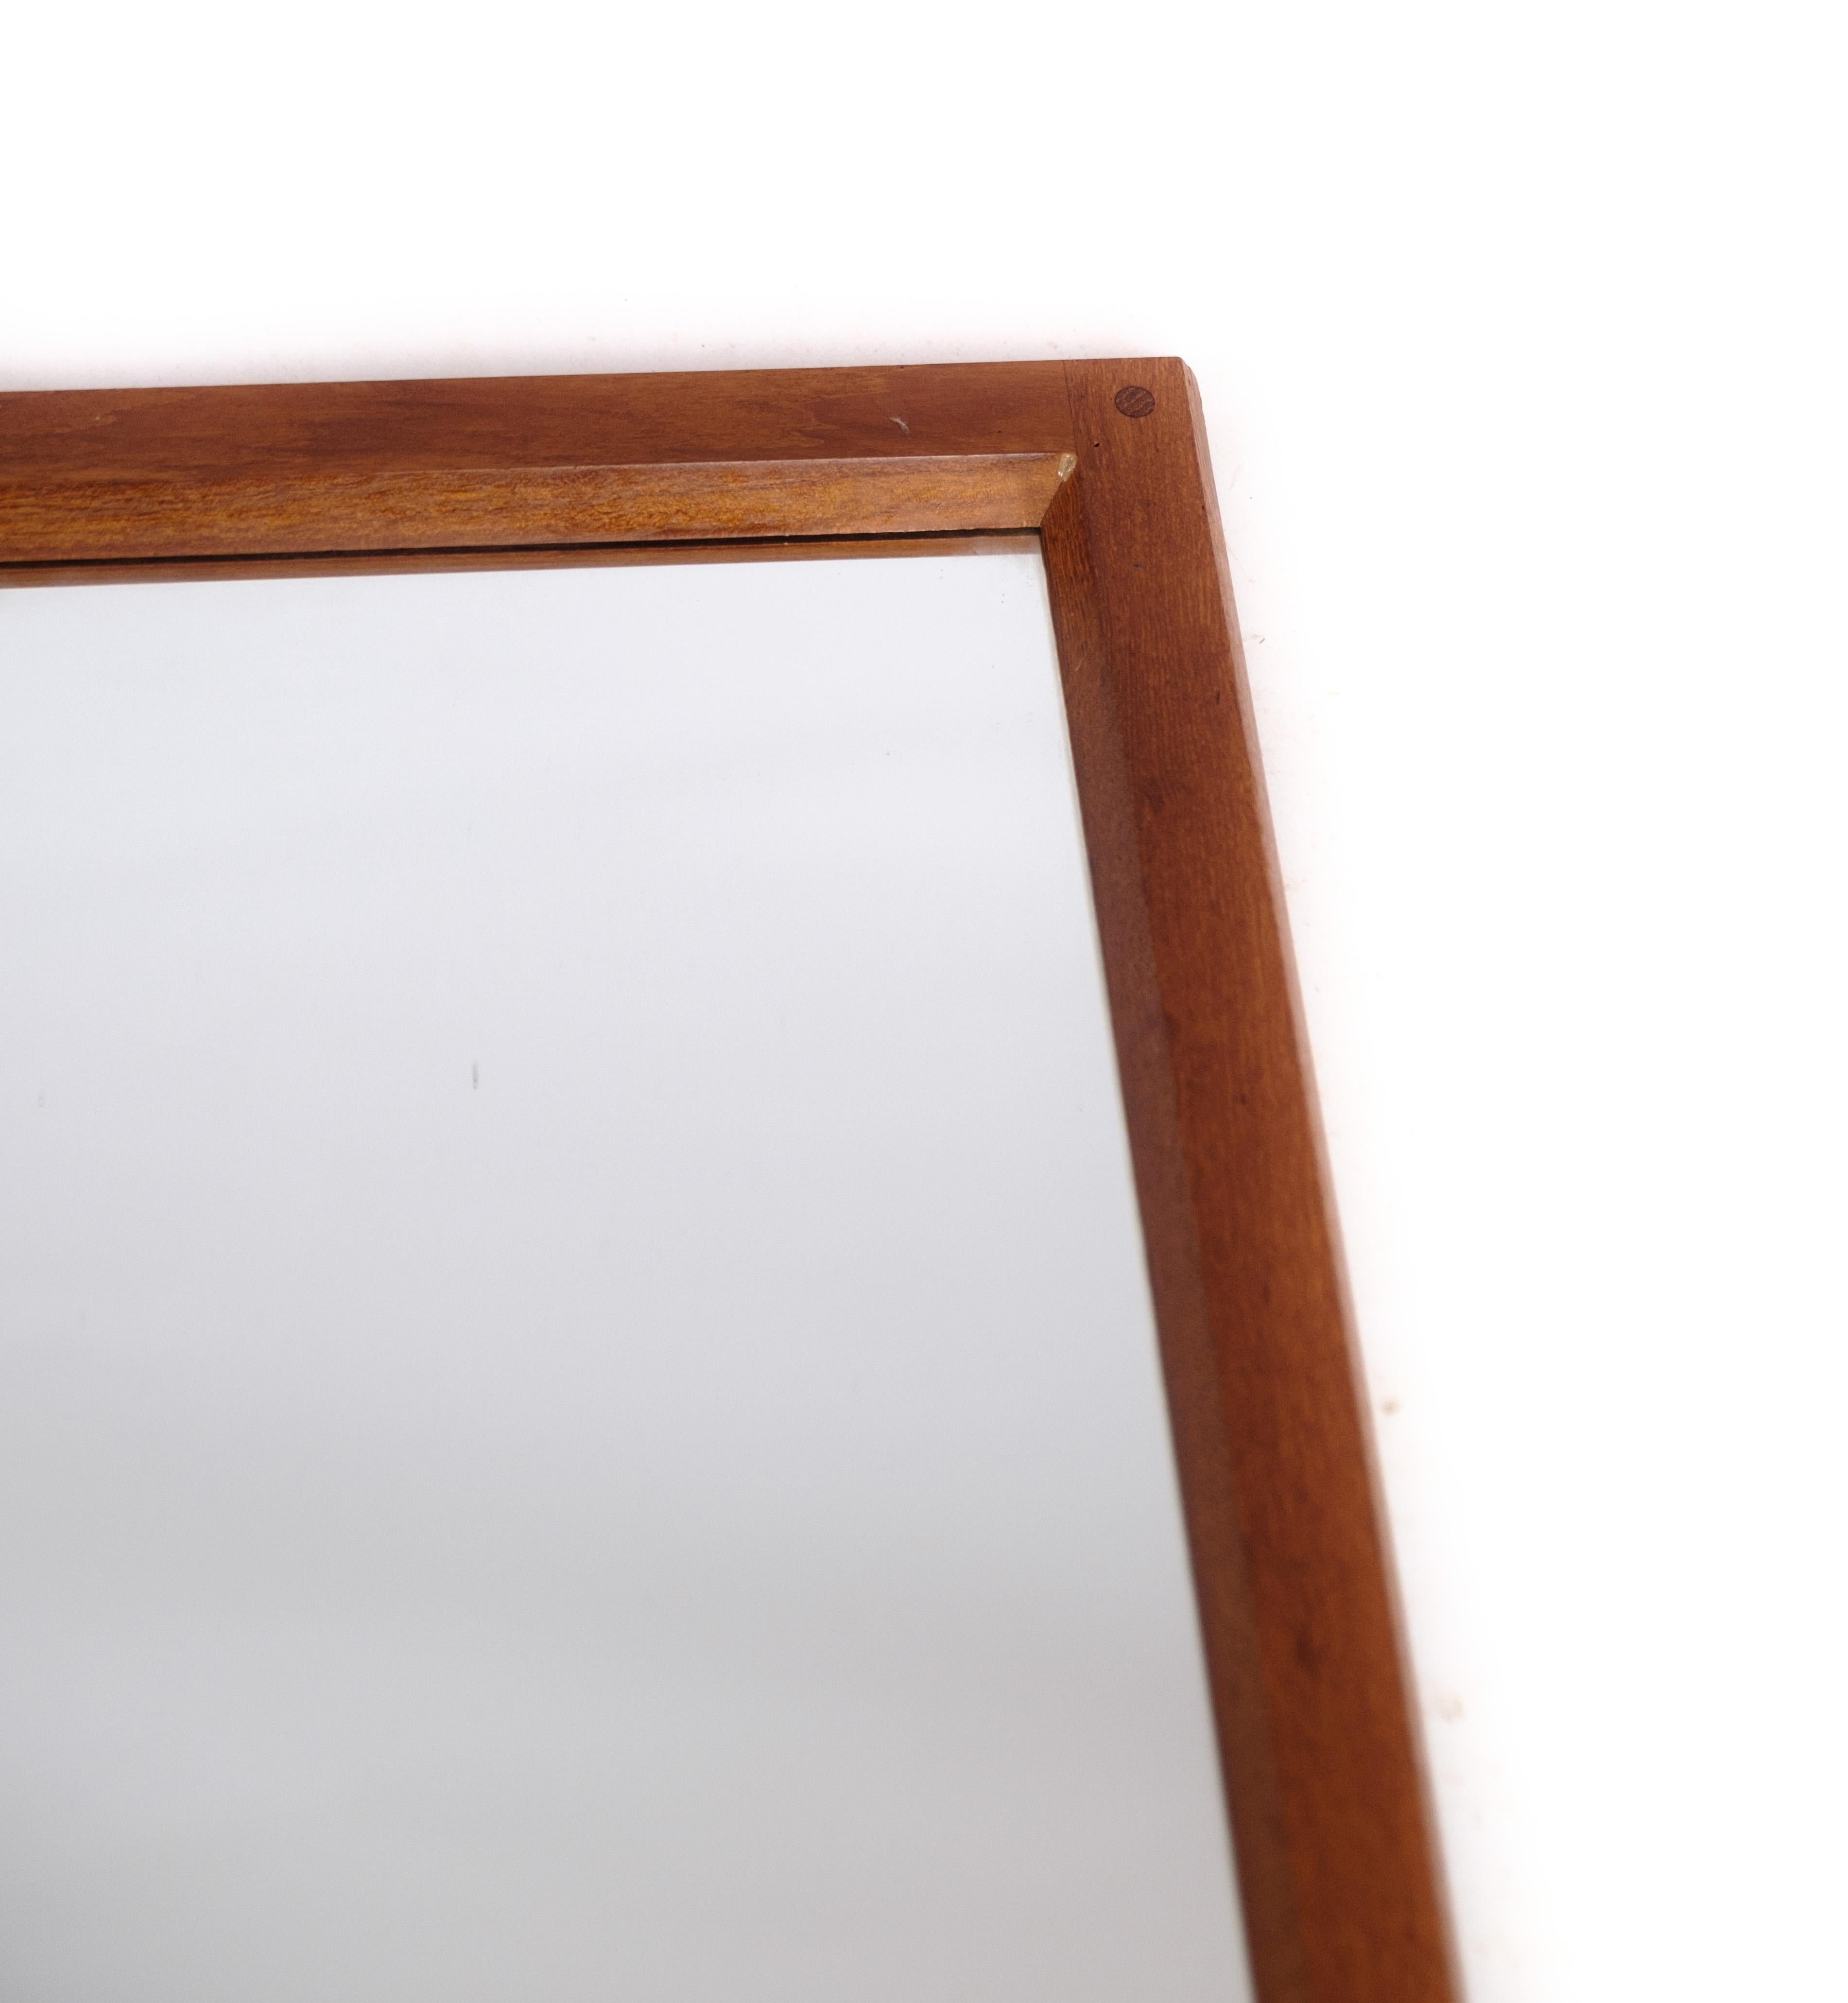 Ce miroir est un bel exemple du design moderne danois, avec un cadre en bois de teck. Le design est attribué à Aksel Kjersgaard, un designer de meubles danois connu pour ses pièces fonctionnelles et élégantes. Le miroir date des années 1960, époque